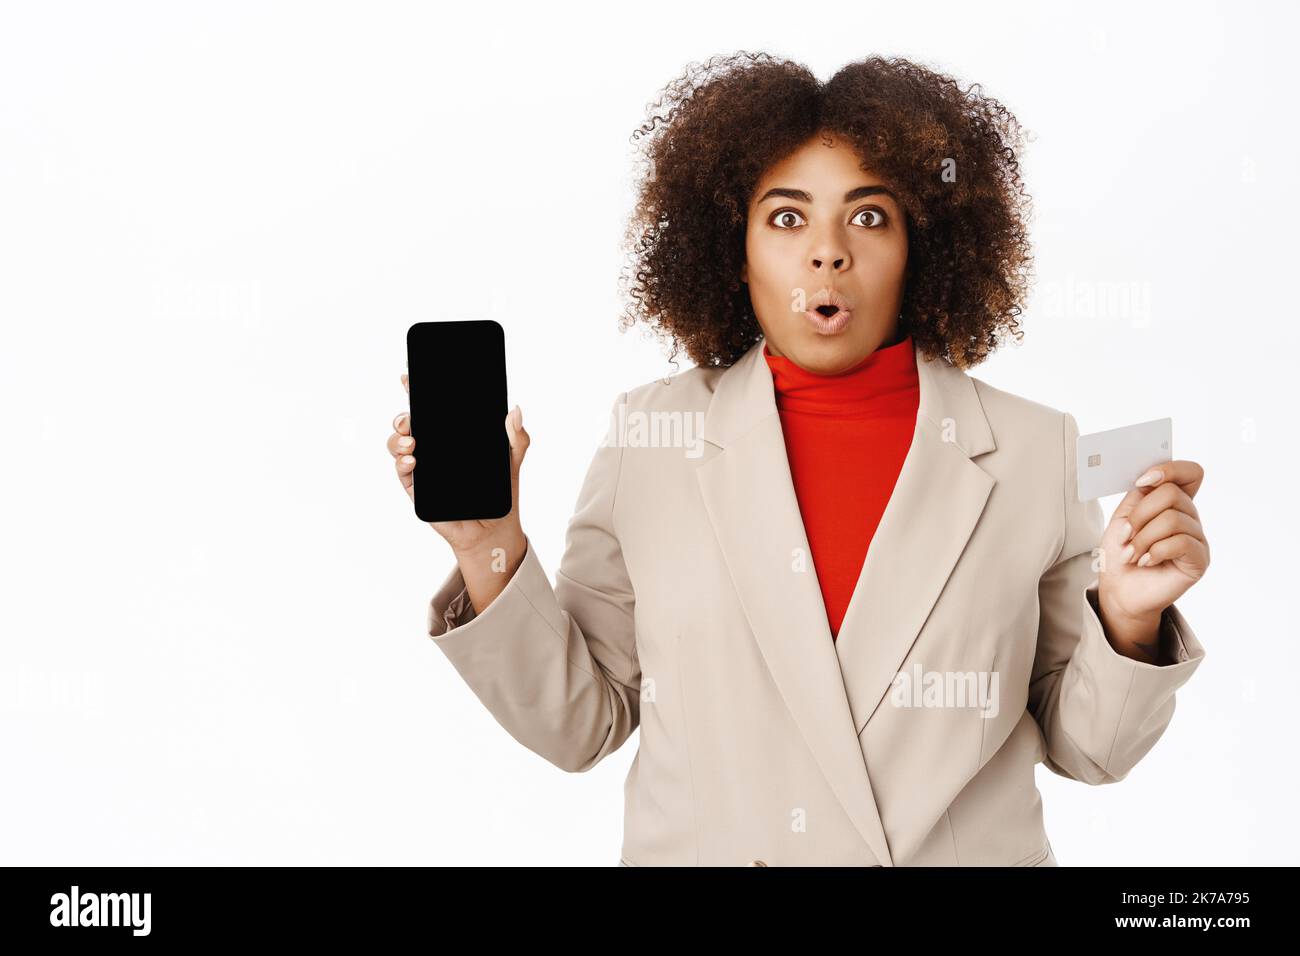 Une femme afro-américaine choquée montre son écran de téléphone mobile et sa carte de crédit, se tient en costume d'affaires, fond blanc Banque D'Images